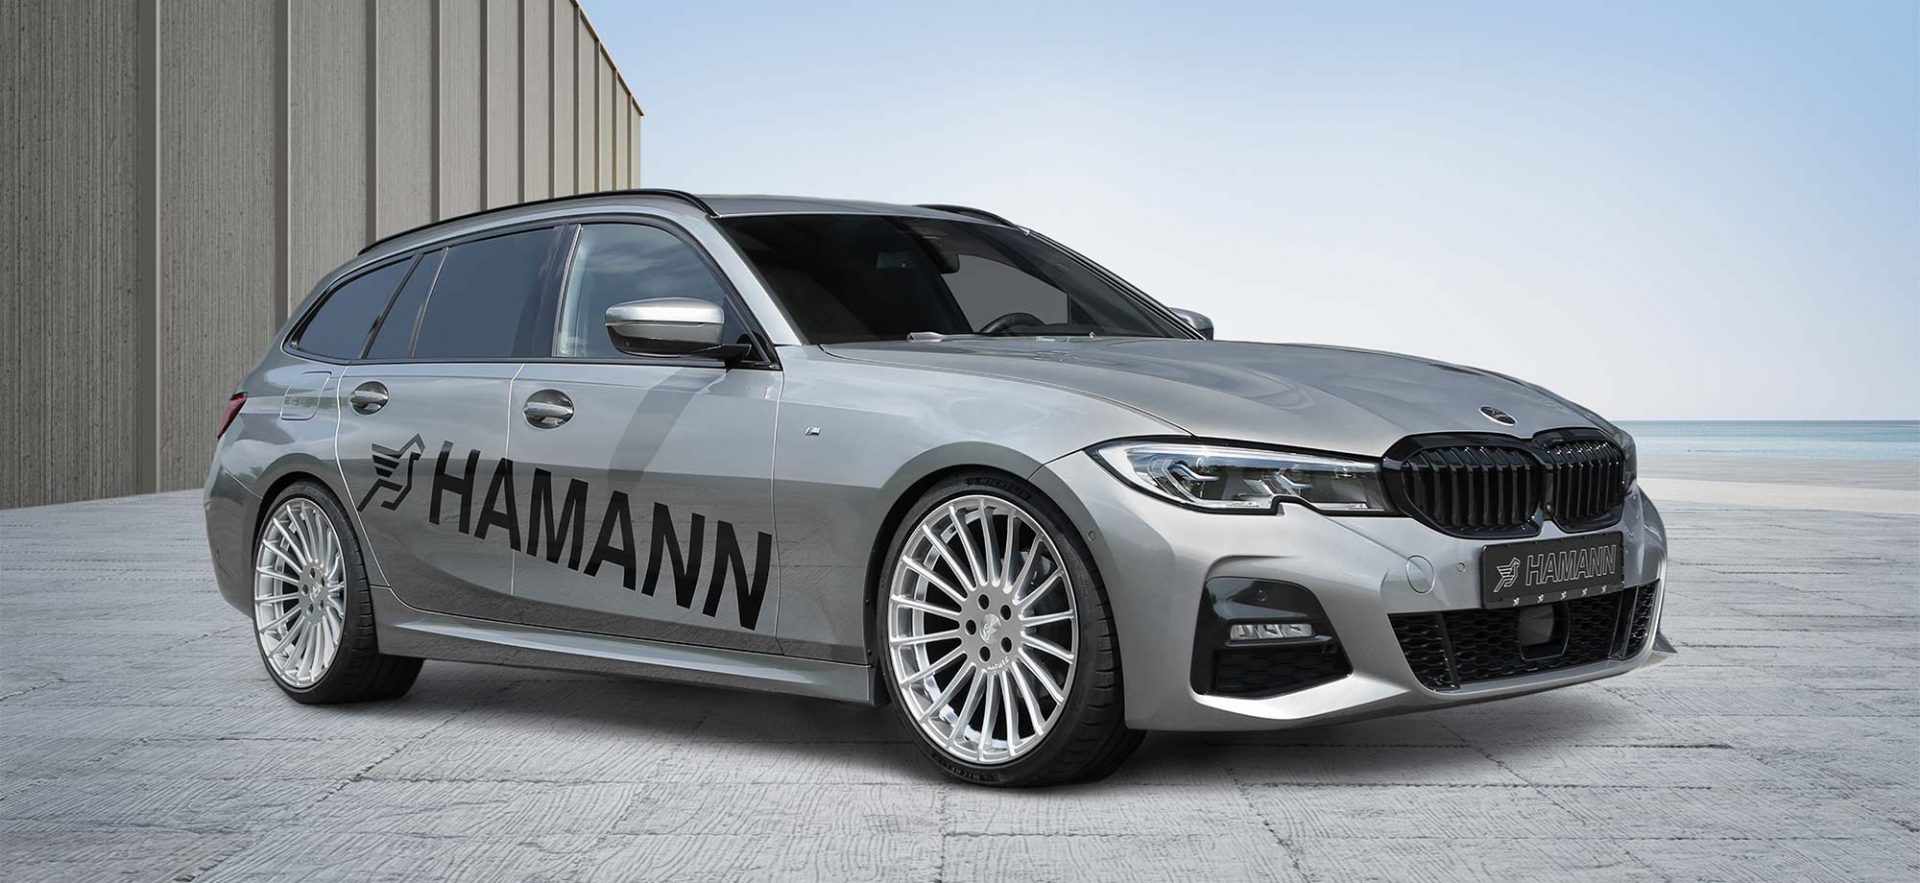 BMW 3ER G21 TOURING | HAMANN Tuning